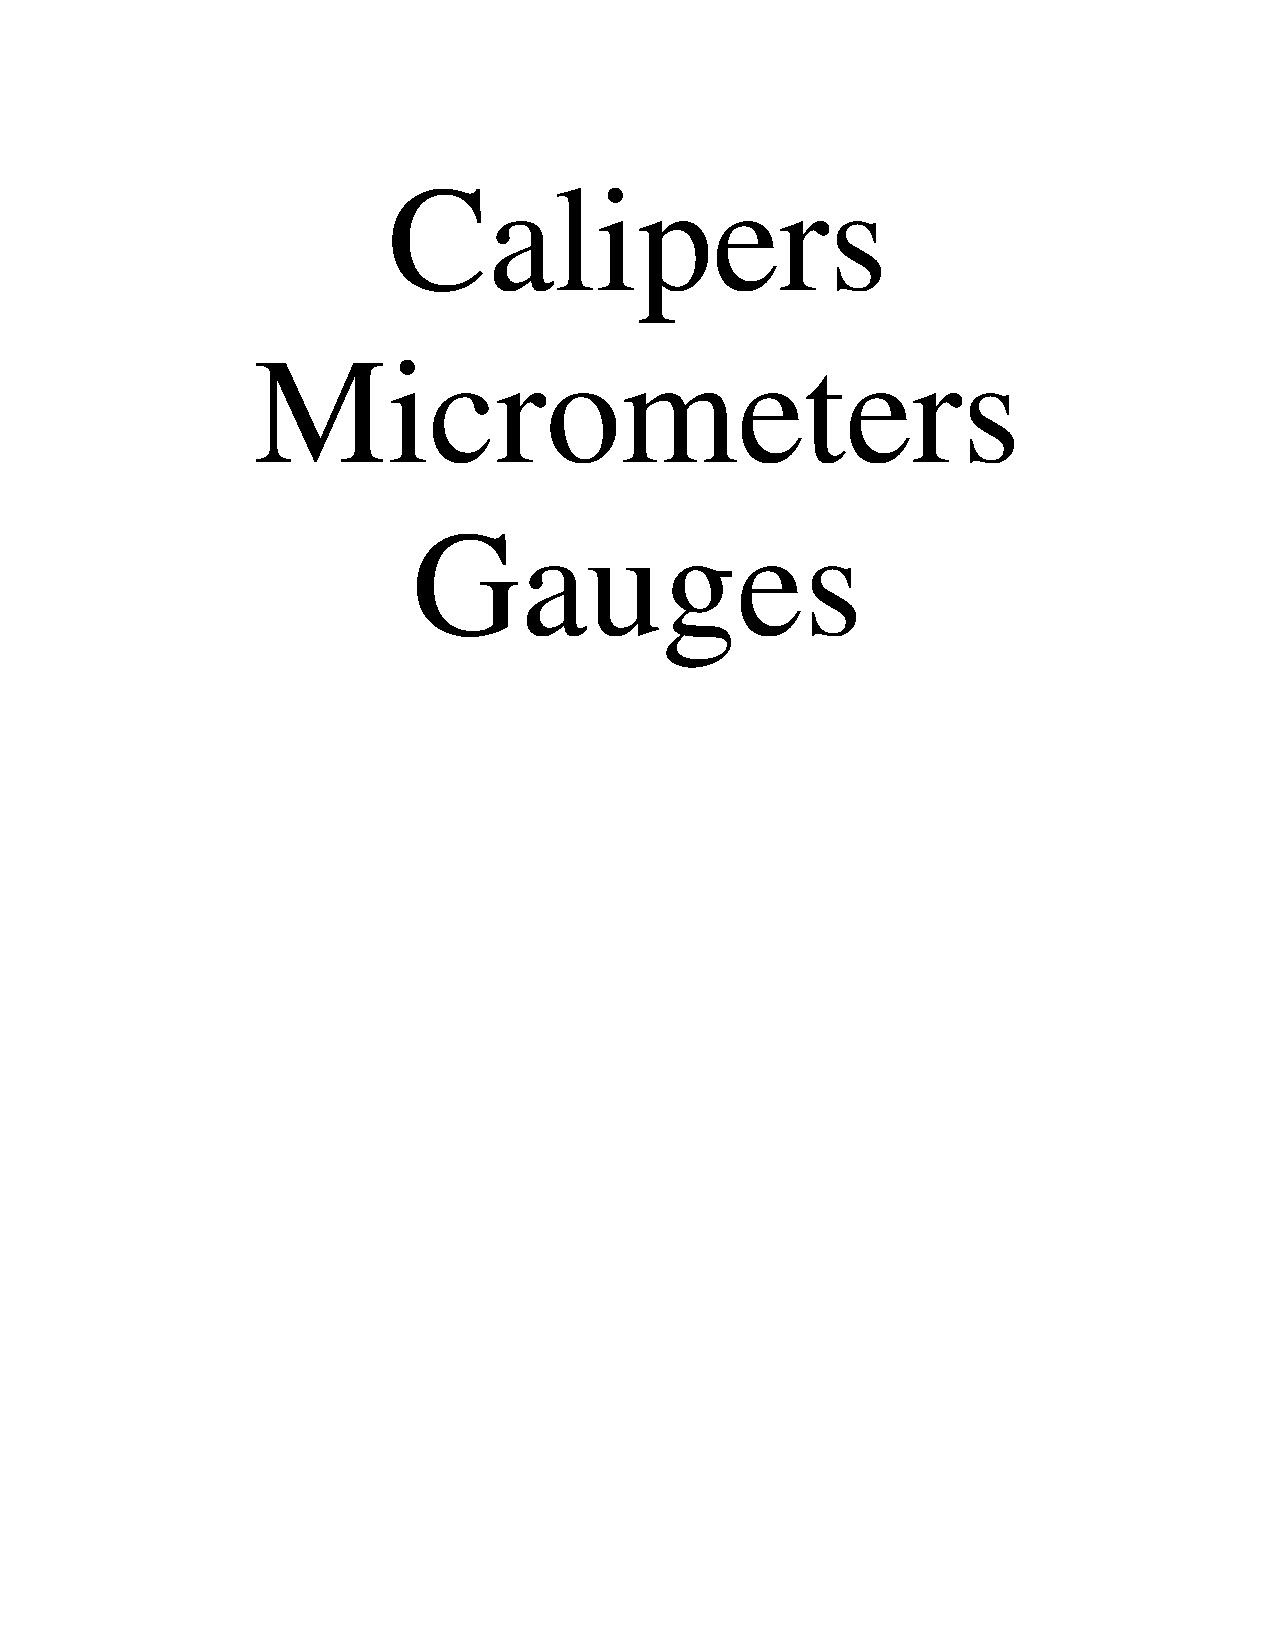 CalipersHeader.pdf